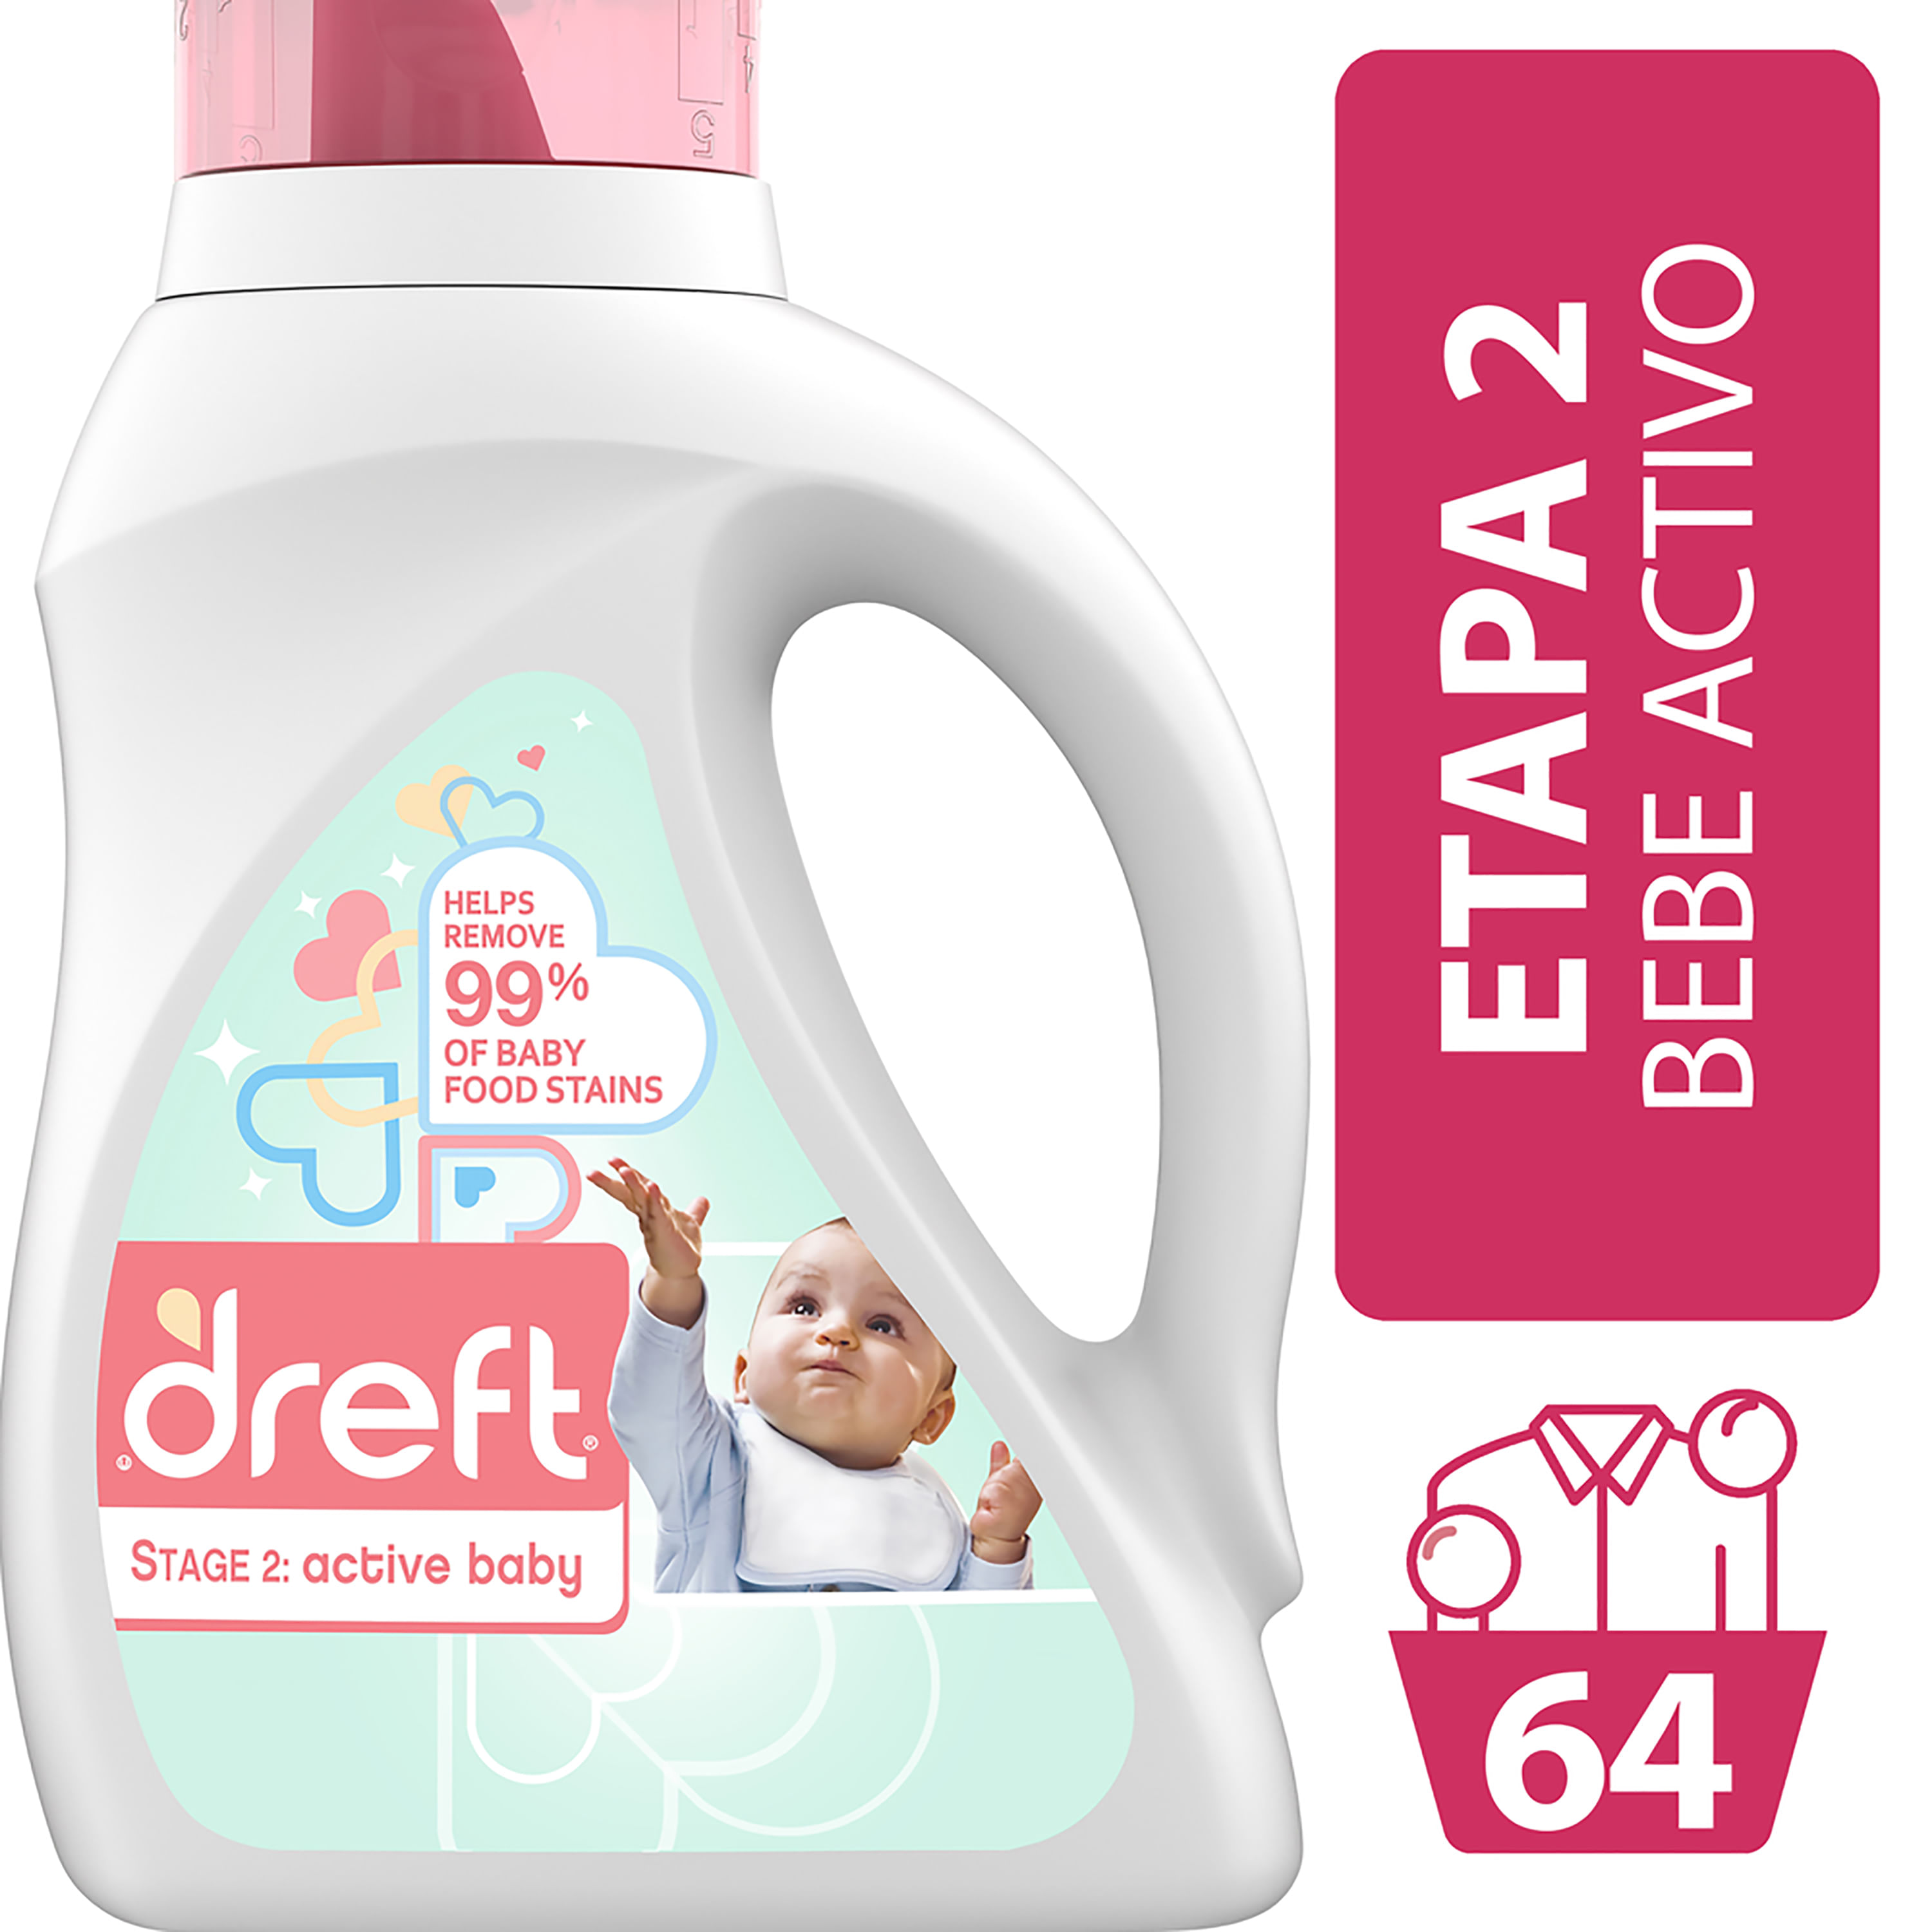 Retirada Confirmación jefe Dreft Stage 2: Detergente De Lavandería Active Baby Está Especialmente  Pensando En El Desarrollo De Su Bebé. Es Por Eso Que Ayuda A Eliminar El  99% De